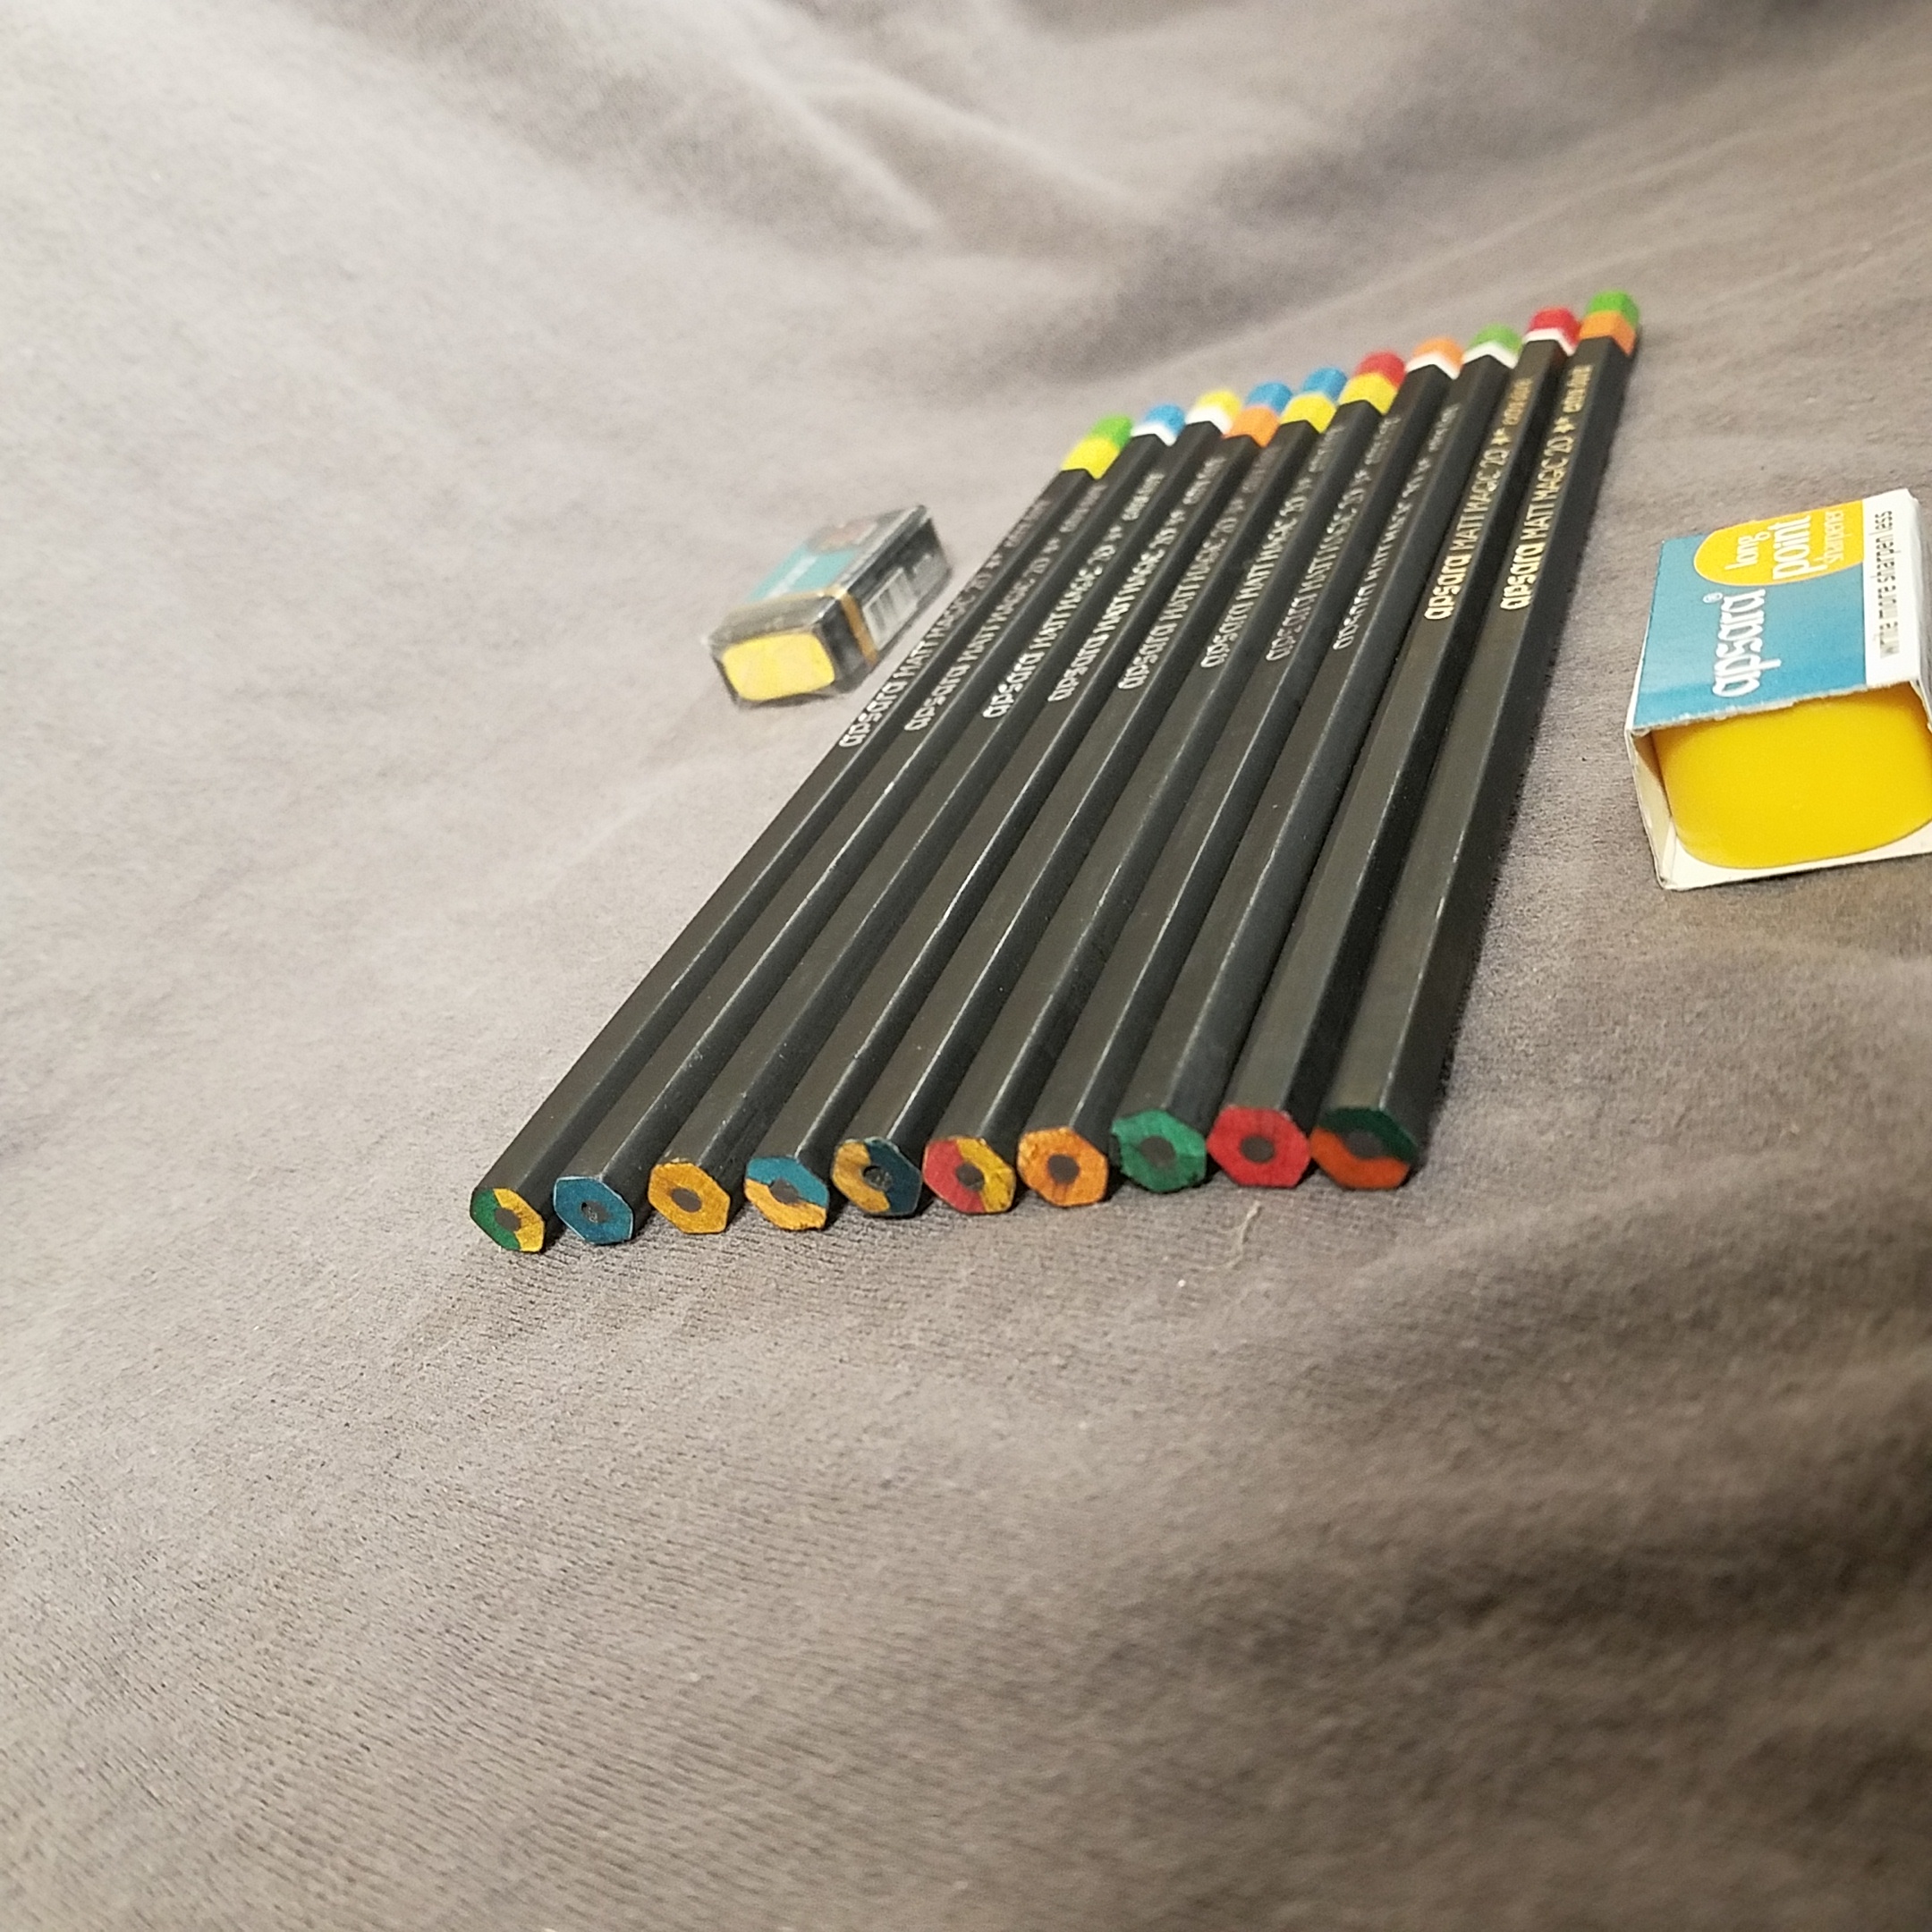 Review: Apsara Matte Magic 2.0 Pencil